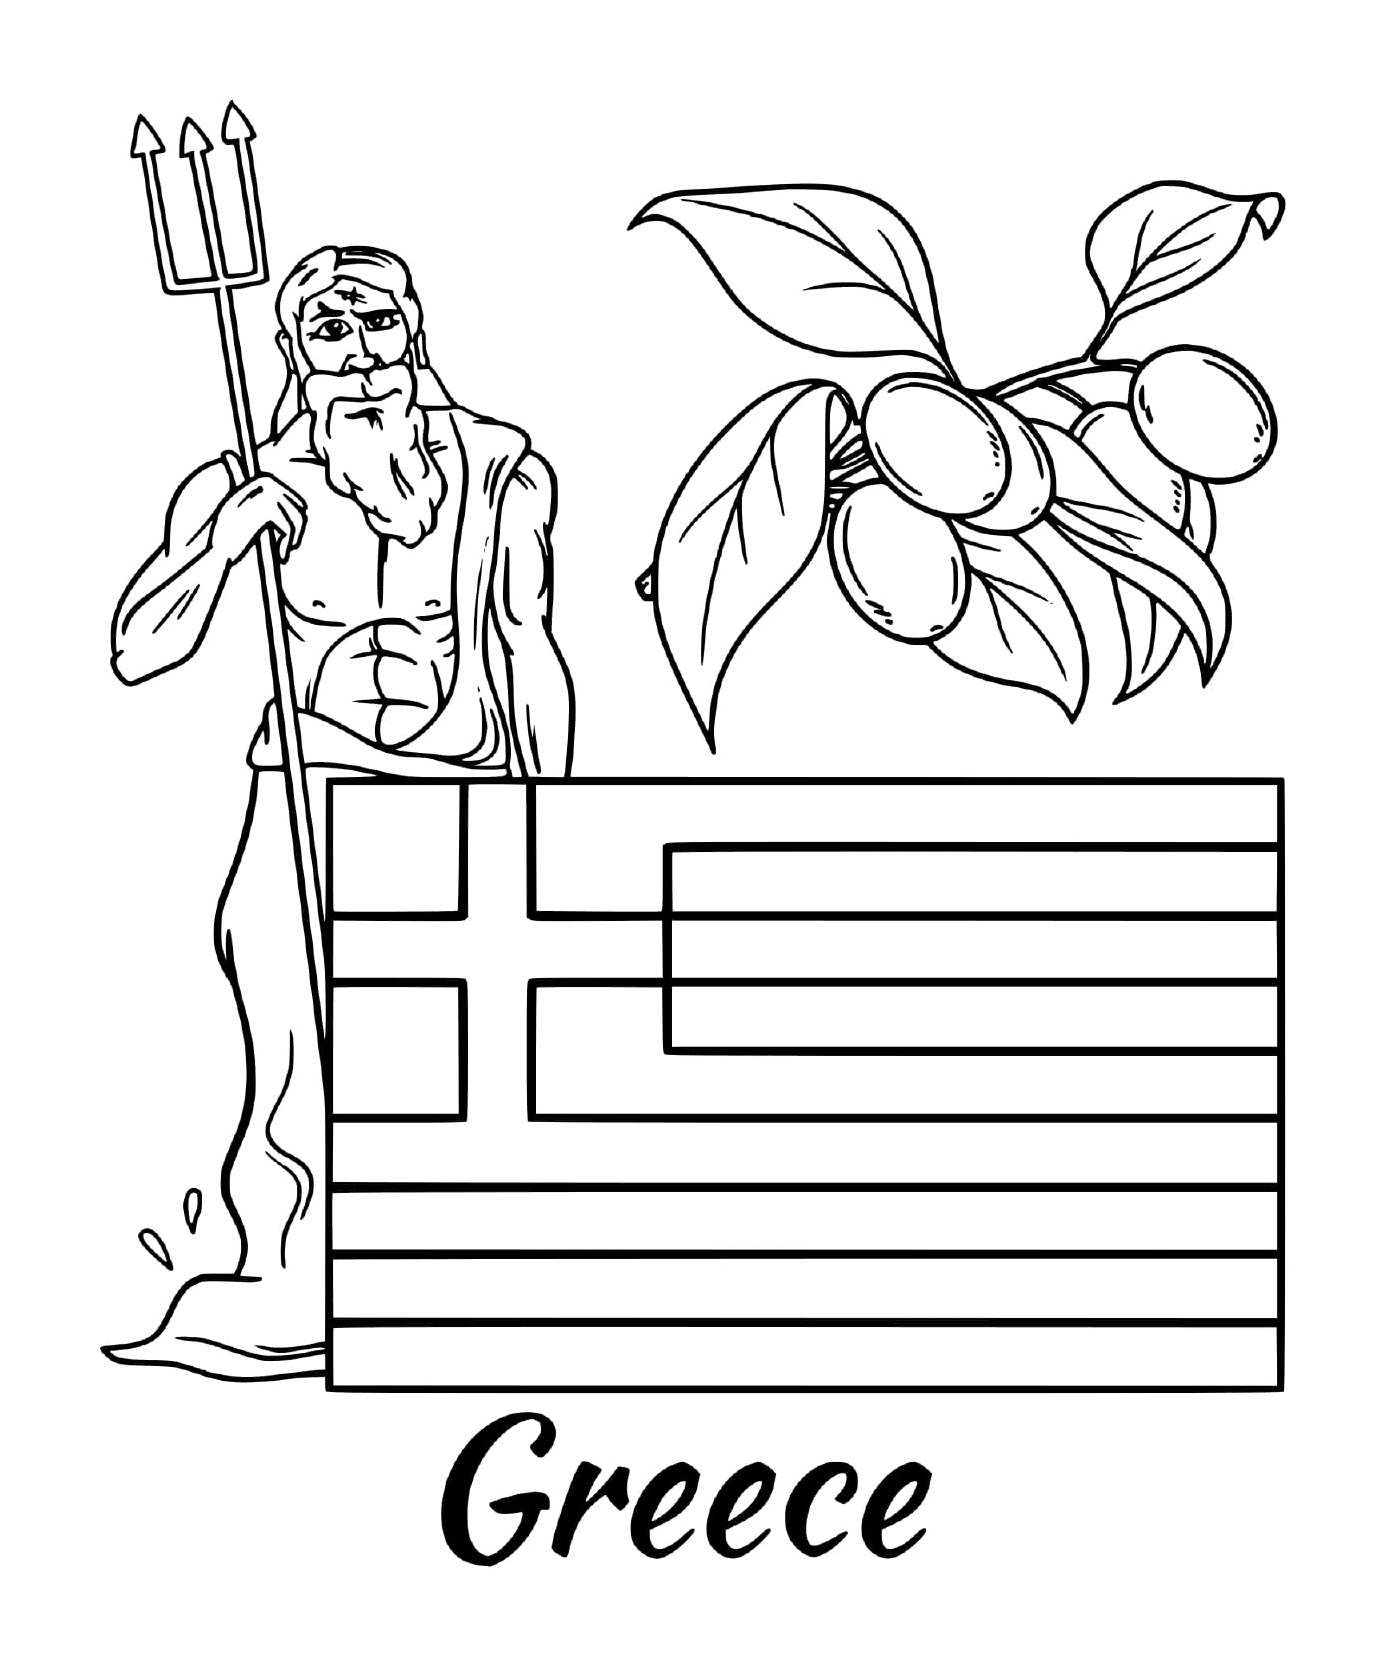  Флаг Греции с Зевсом 